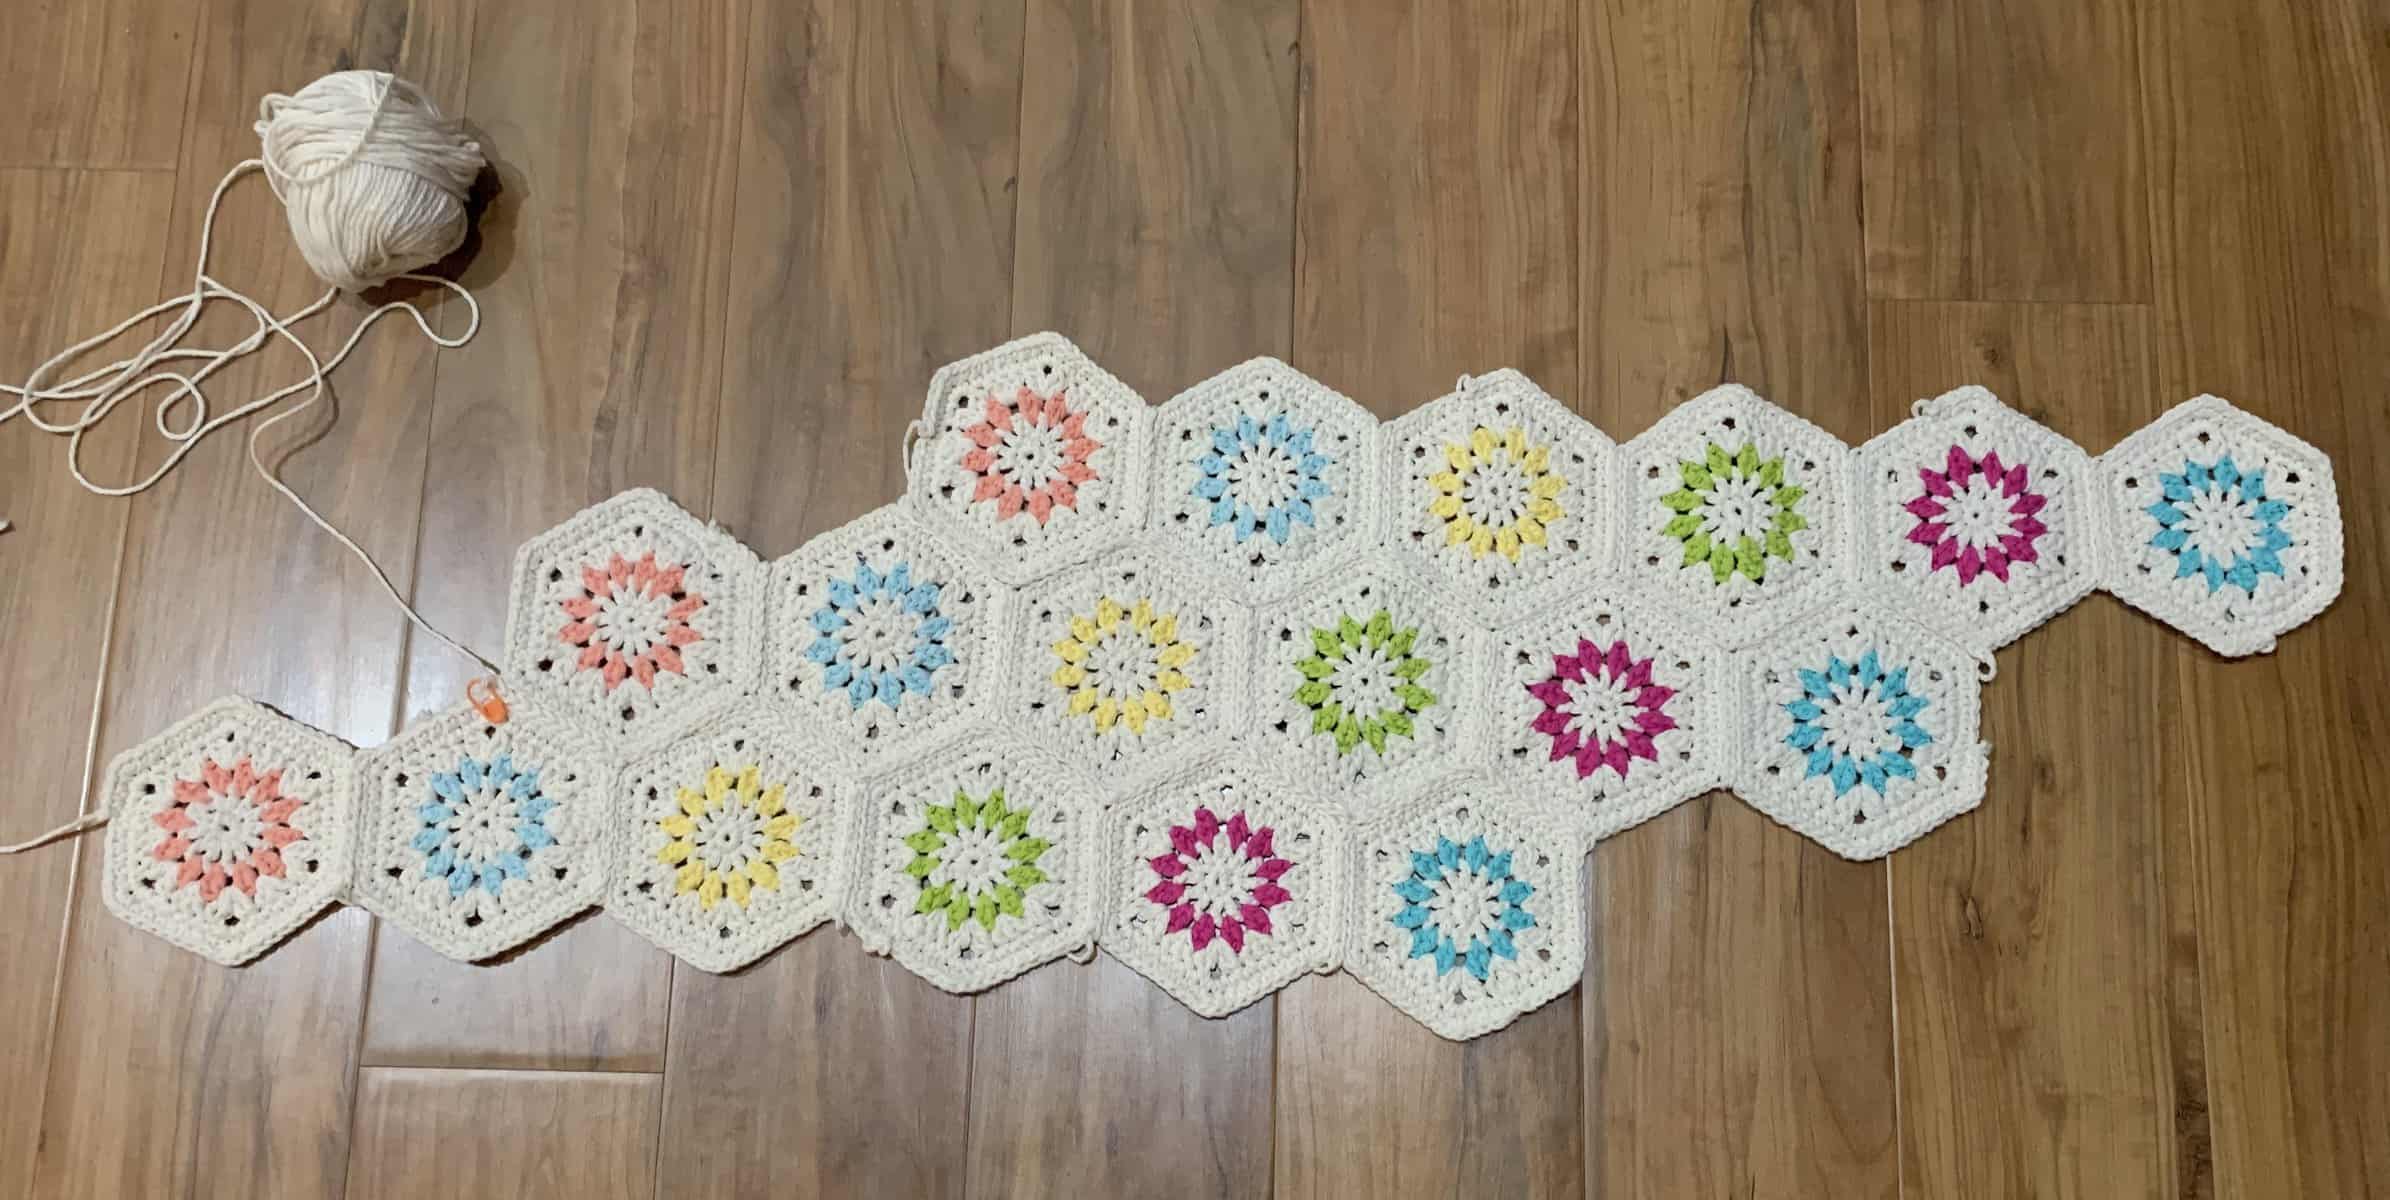 Hexagon Crochet Market Bag Pattern | Reach Your Crochet Goals!